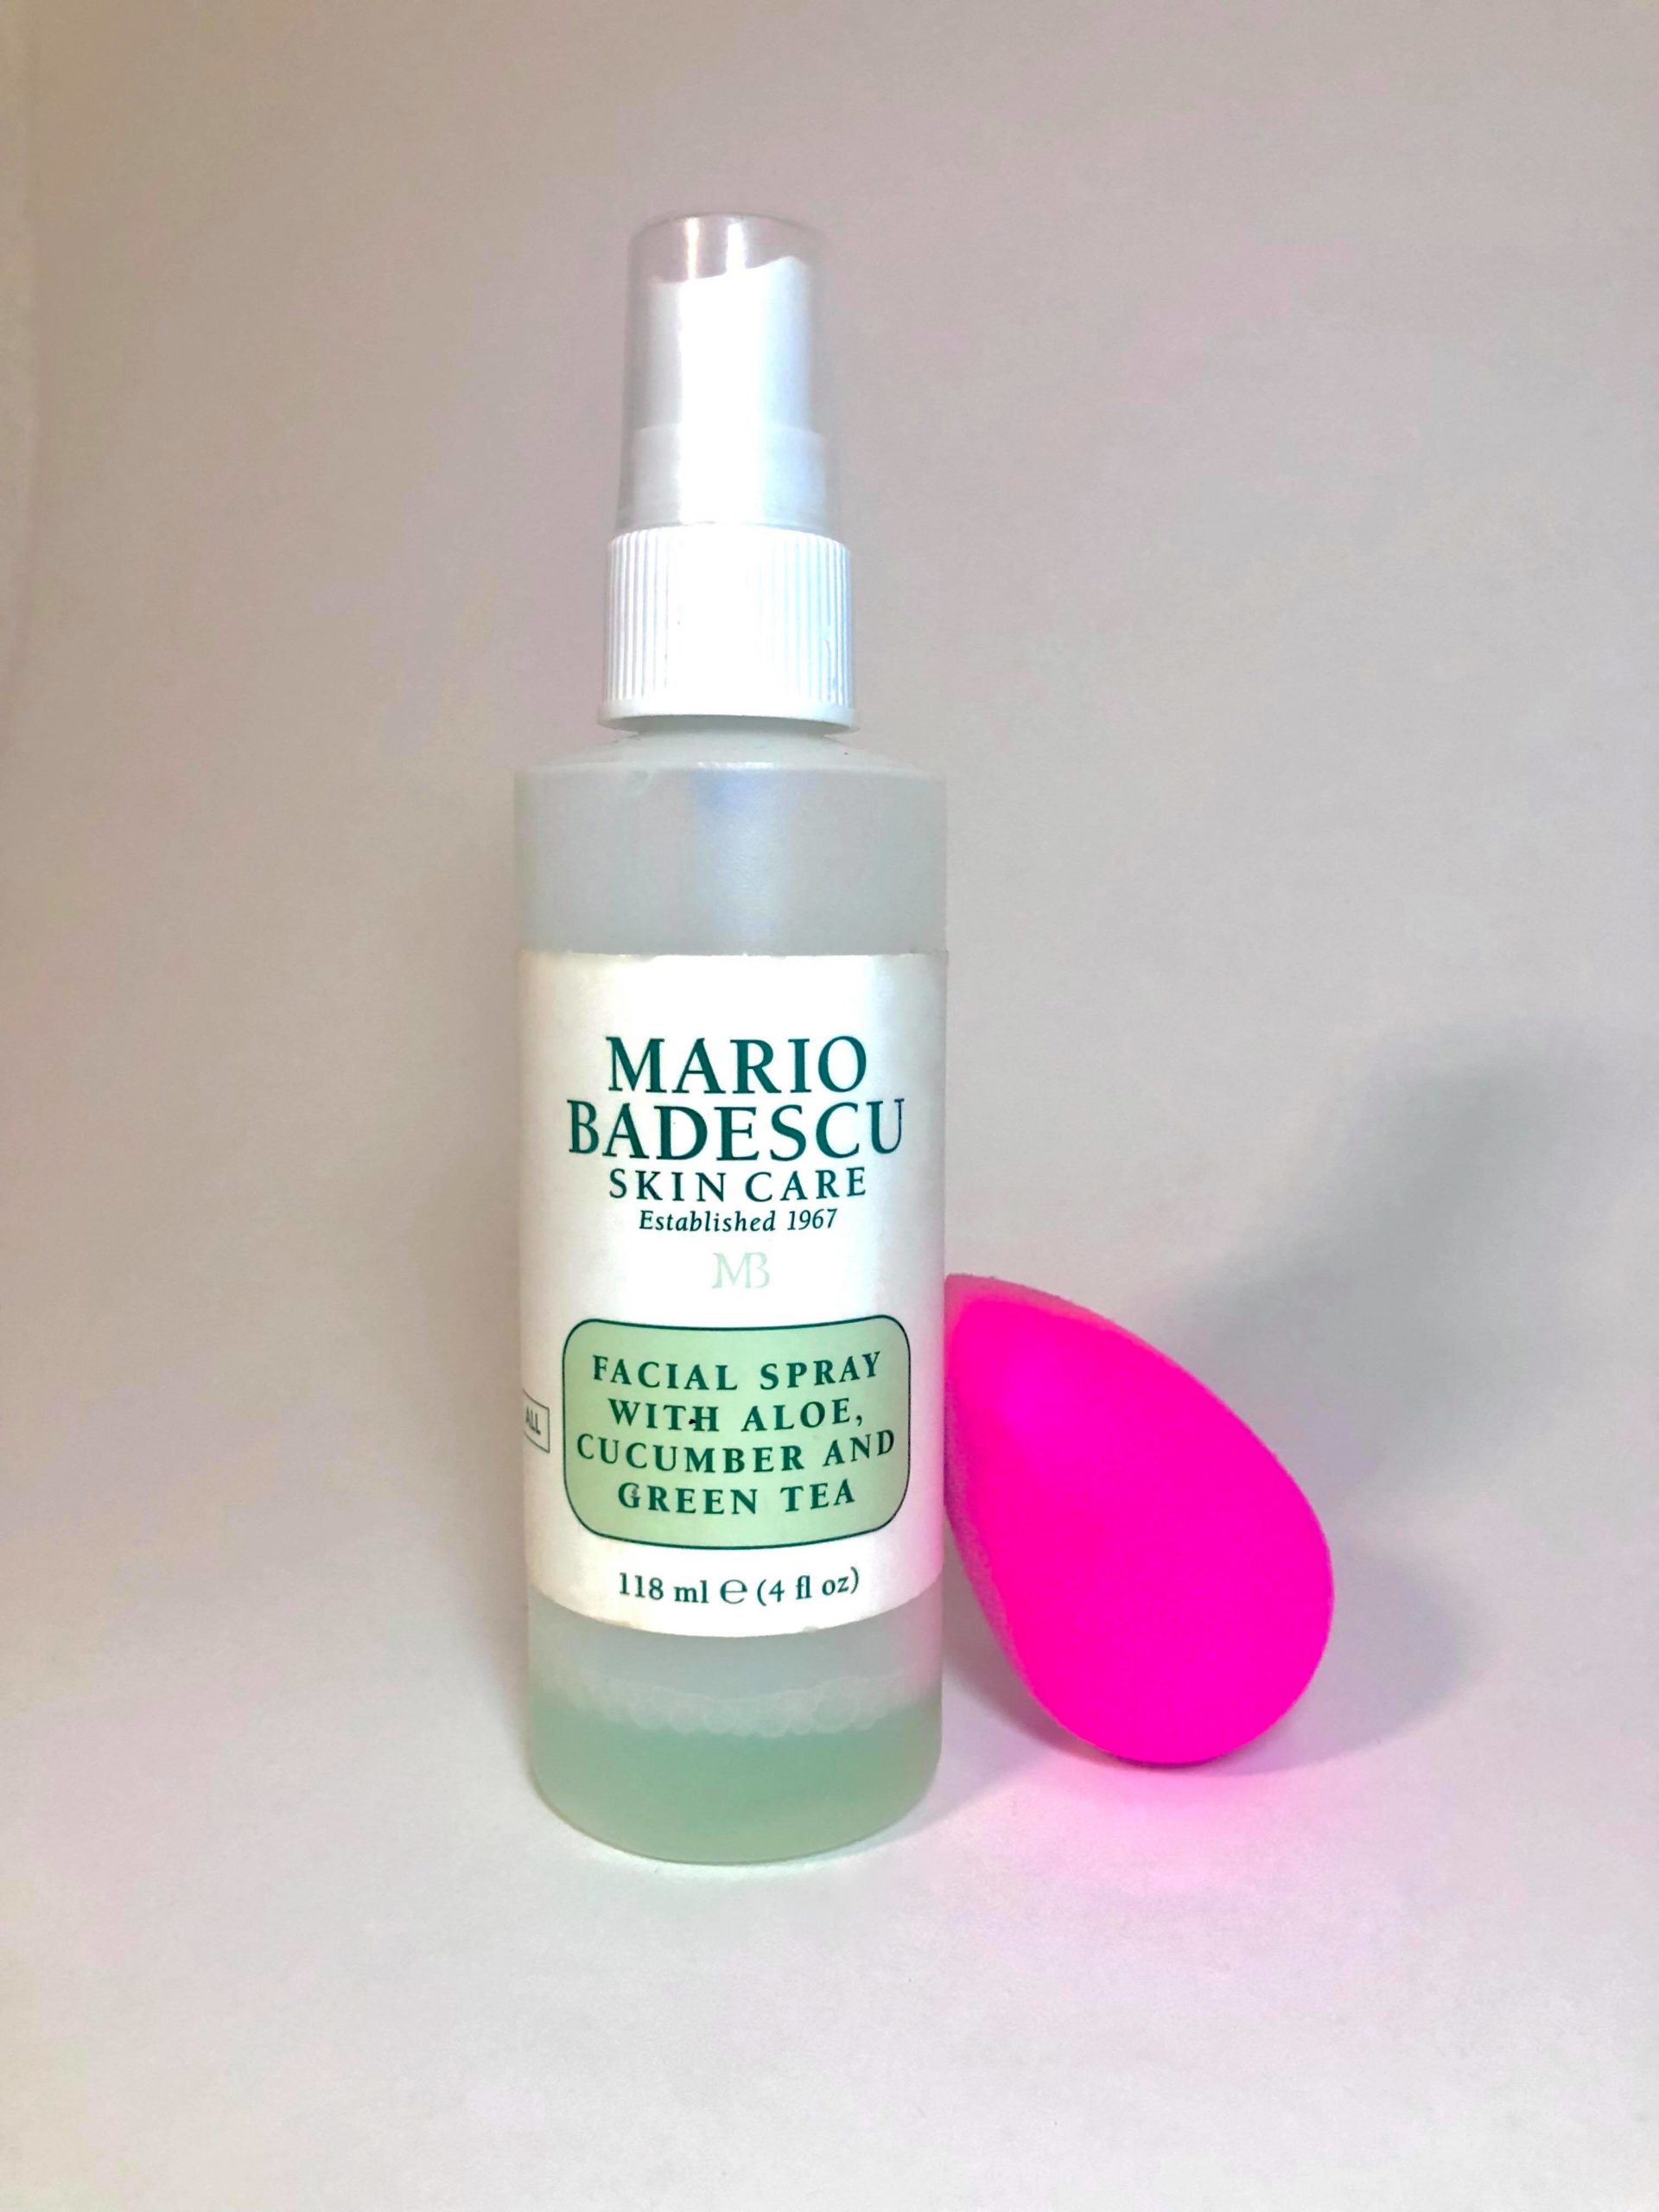 Mario Badescu facial spray and Beauty Blender